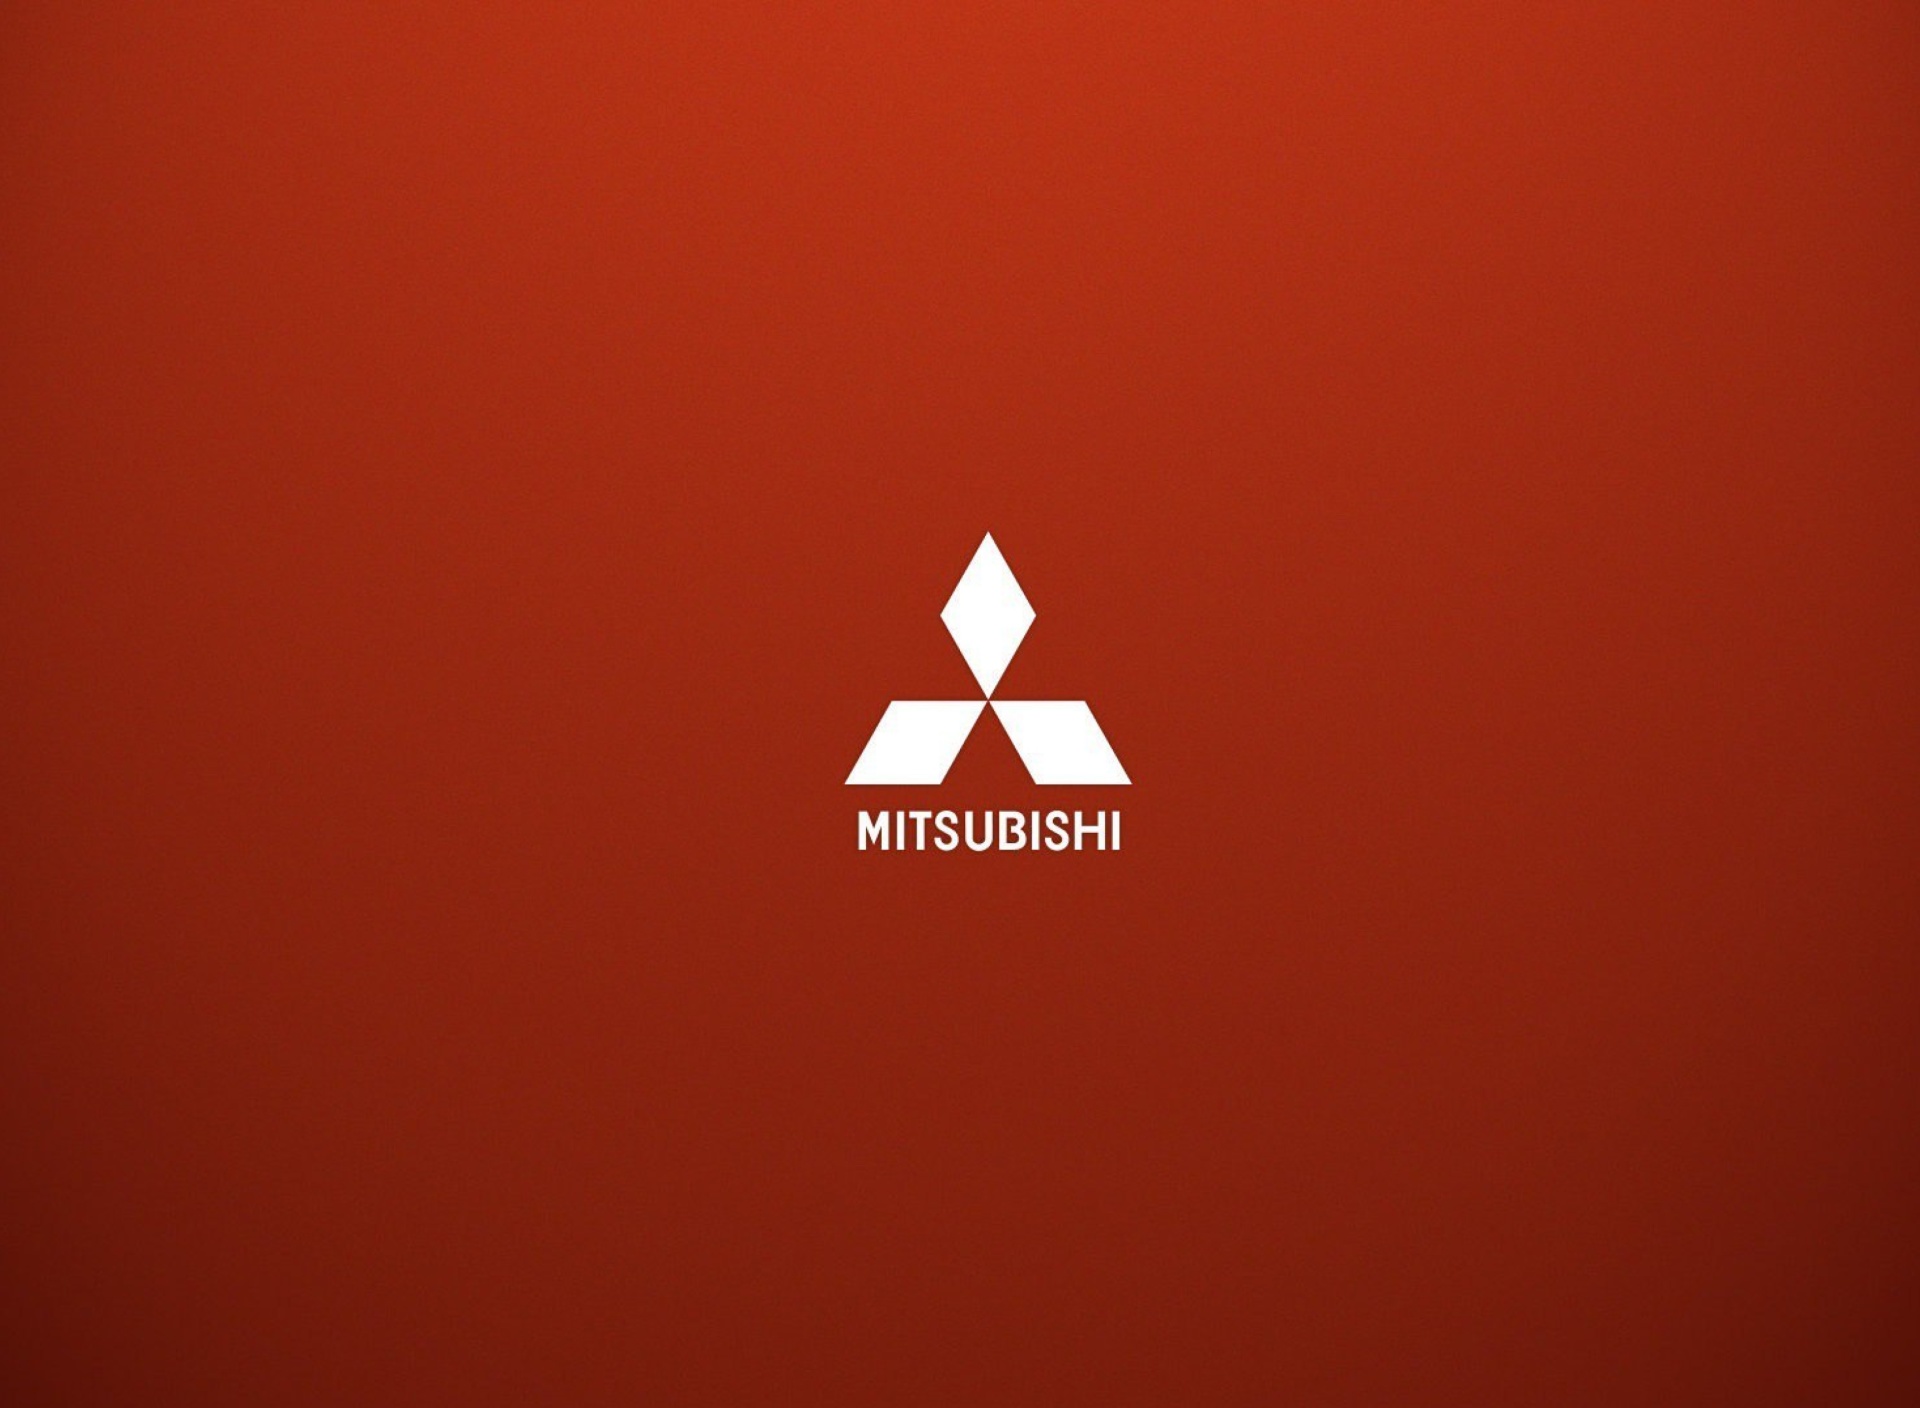 Mitsubishi logo wallpaper 1920x1408